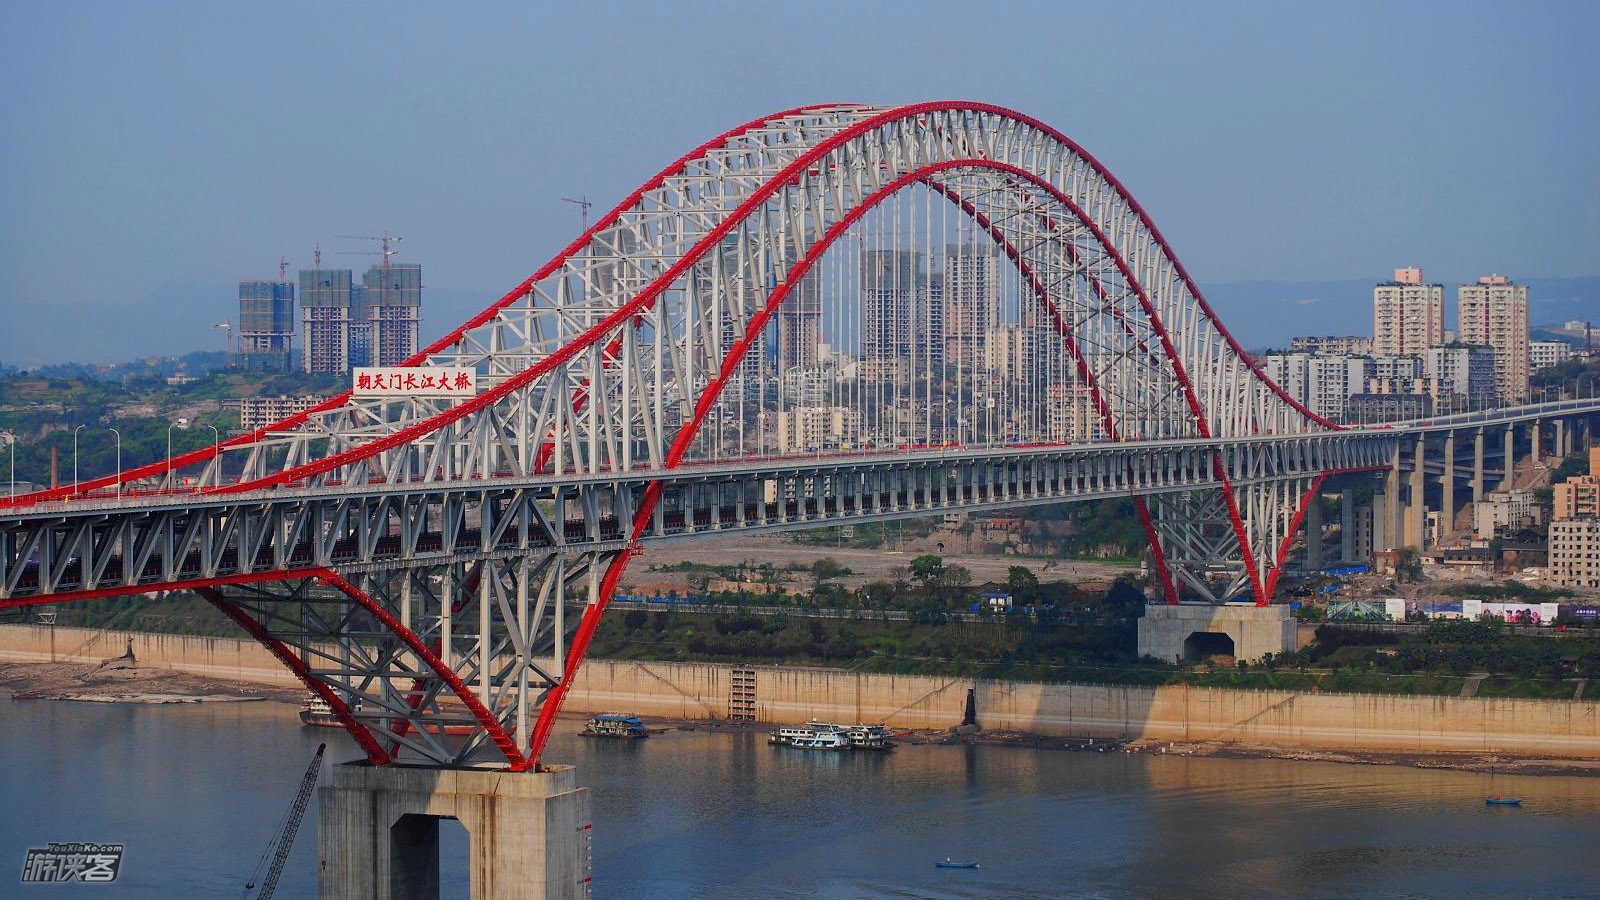 18周三晚,看重庆醉美大桥-朝天门,夜行南滨路;着最闪的衫,穿梭重庆的